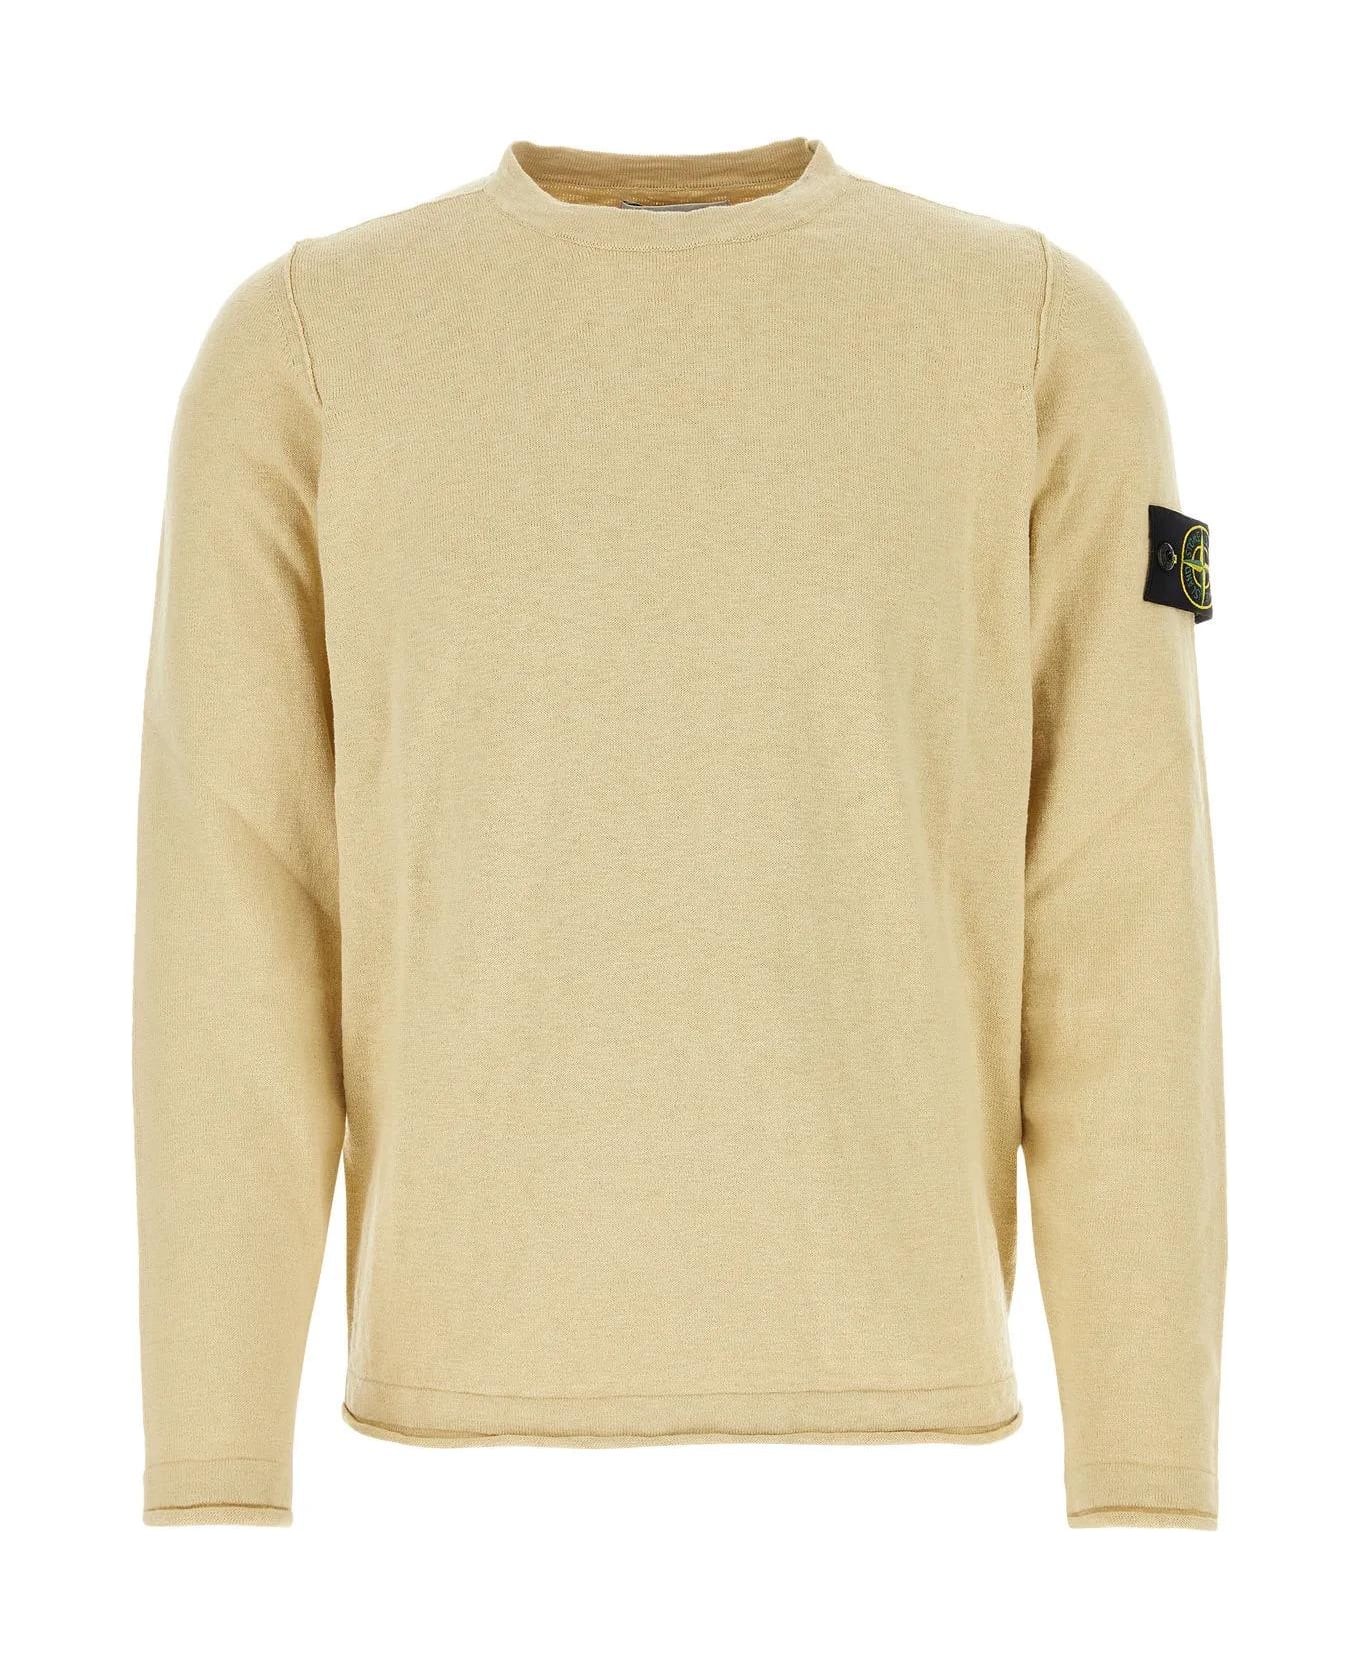 Stone Island Cream Cotton Blend Sweater - Beige